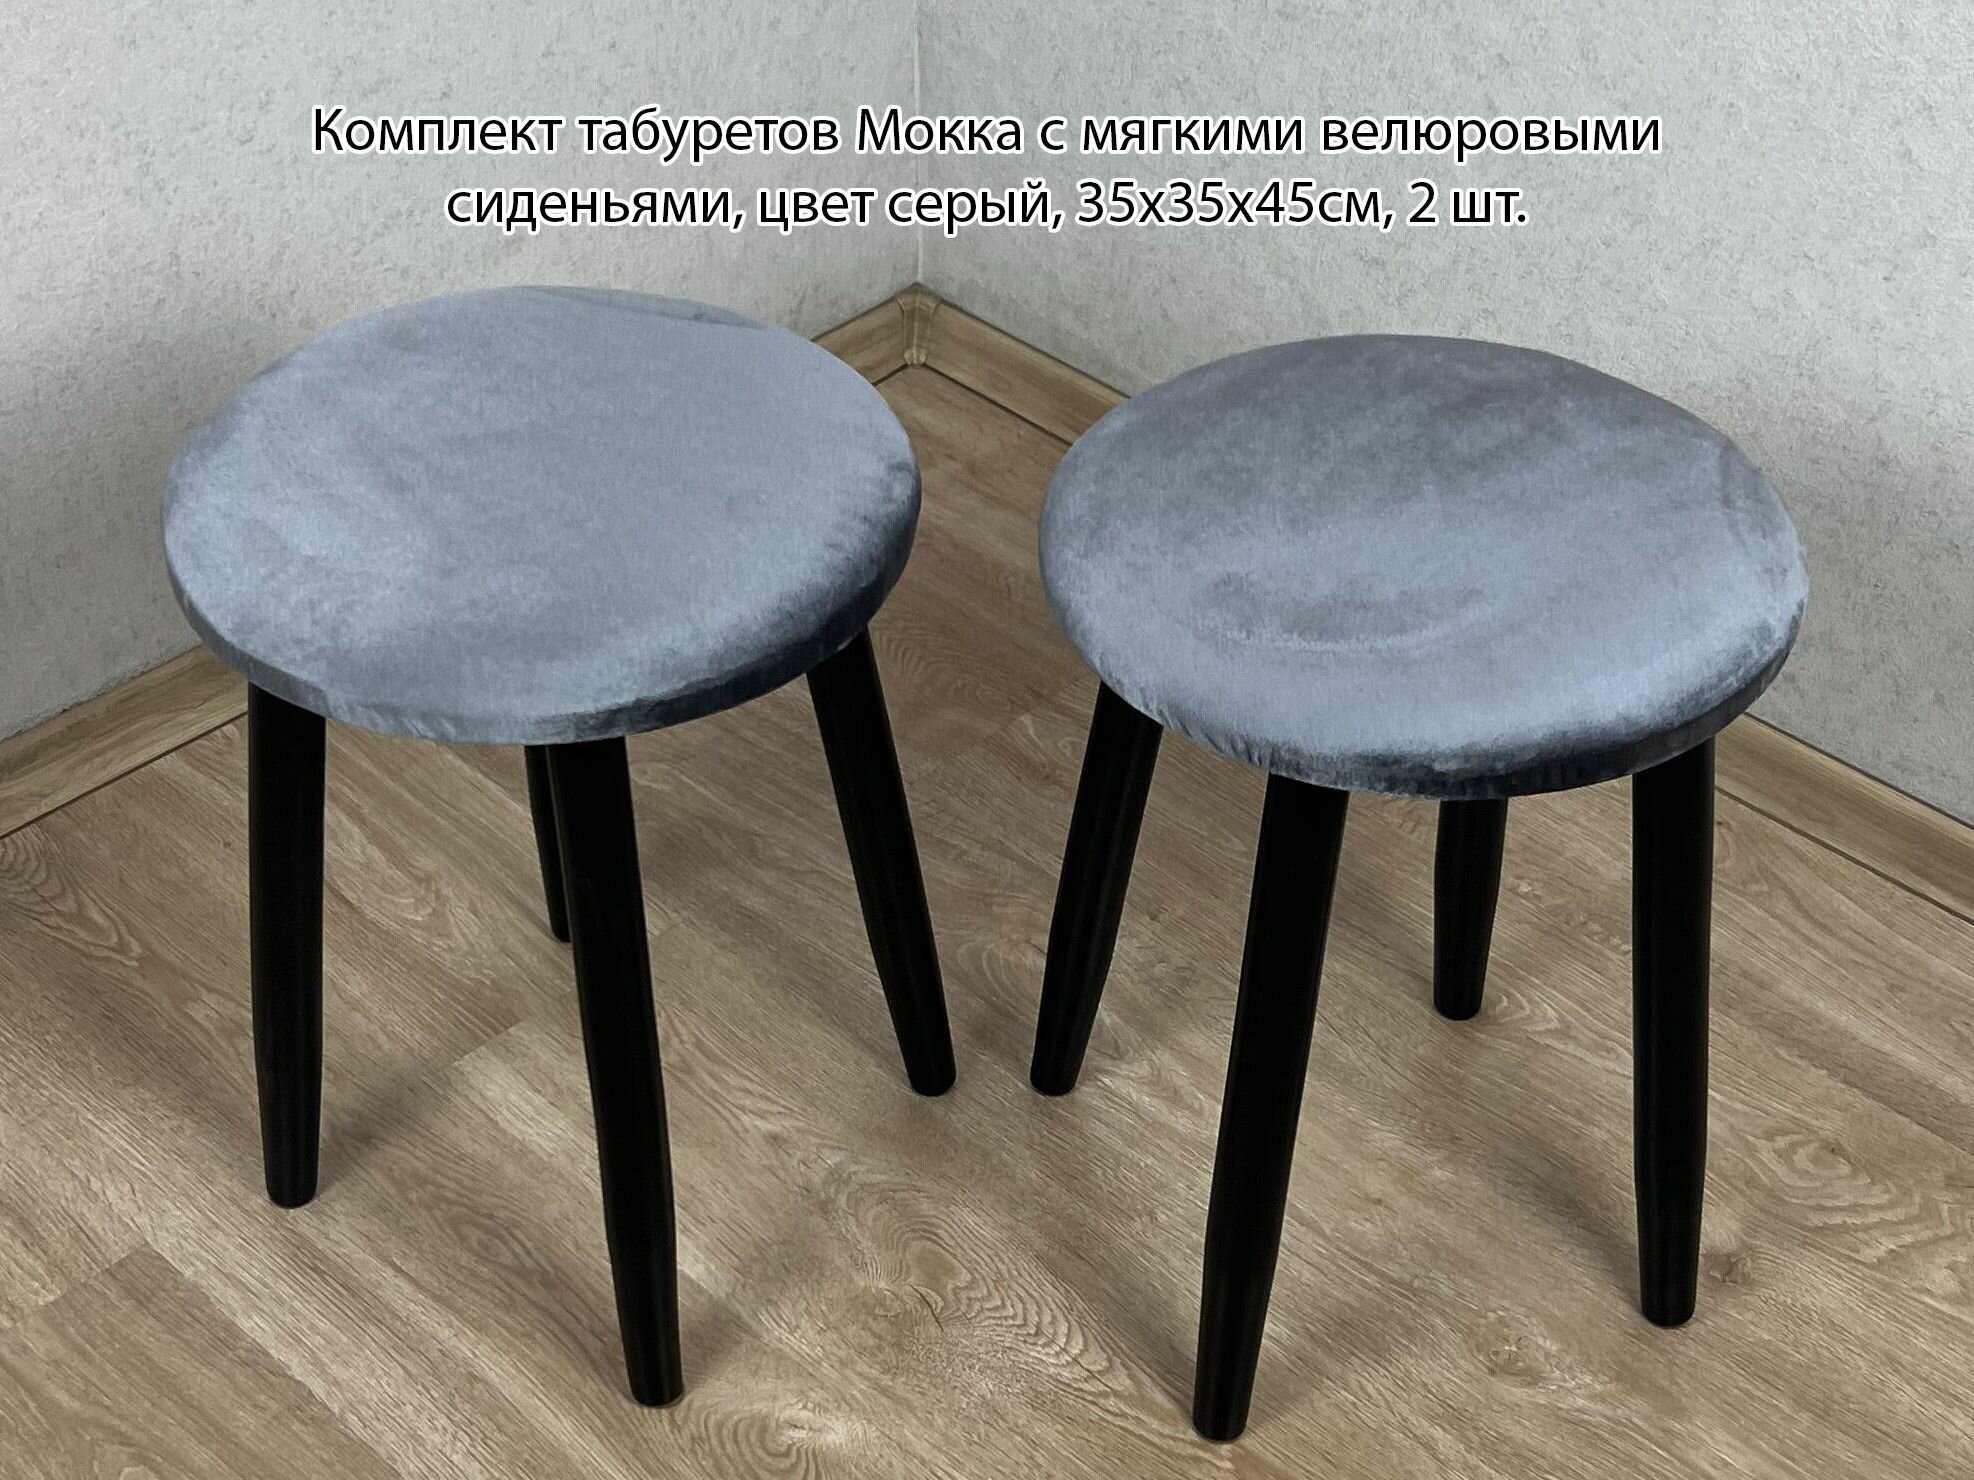 Комплект табуретов Мокка круглых для кухни с мягким велюровым сиденьем серого цвета на черных ножках, 2 шт.